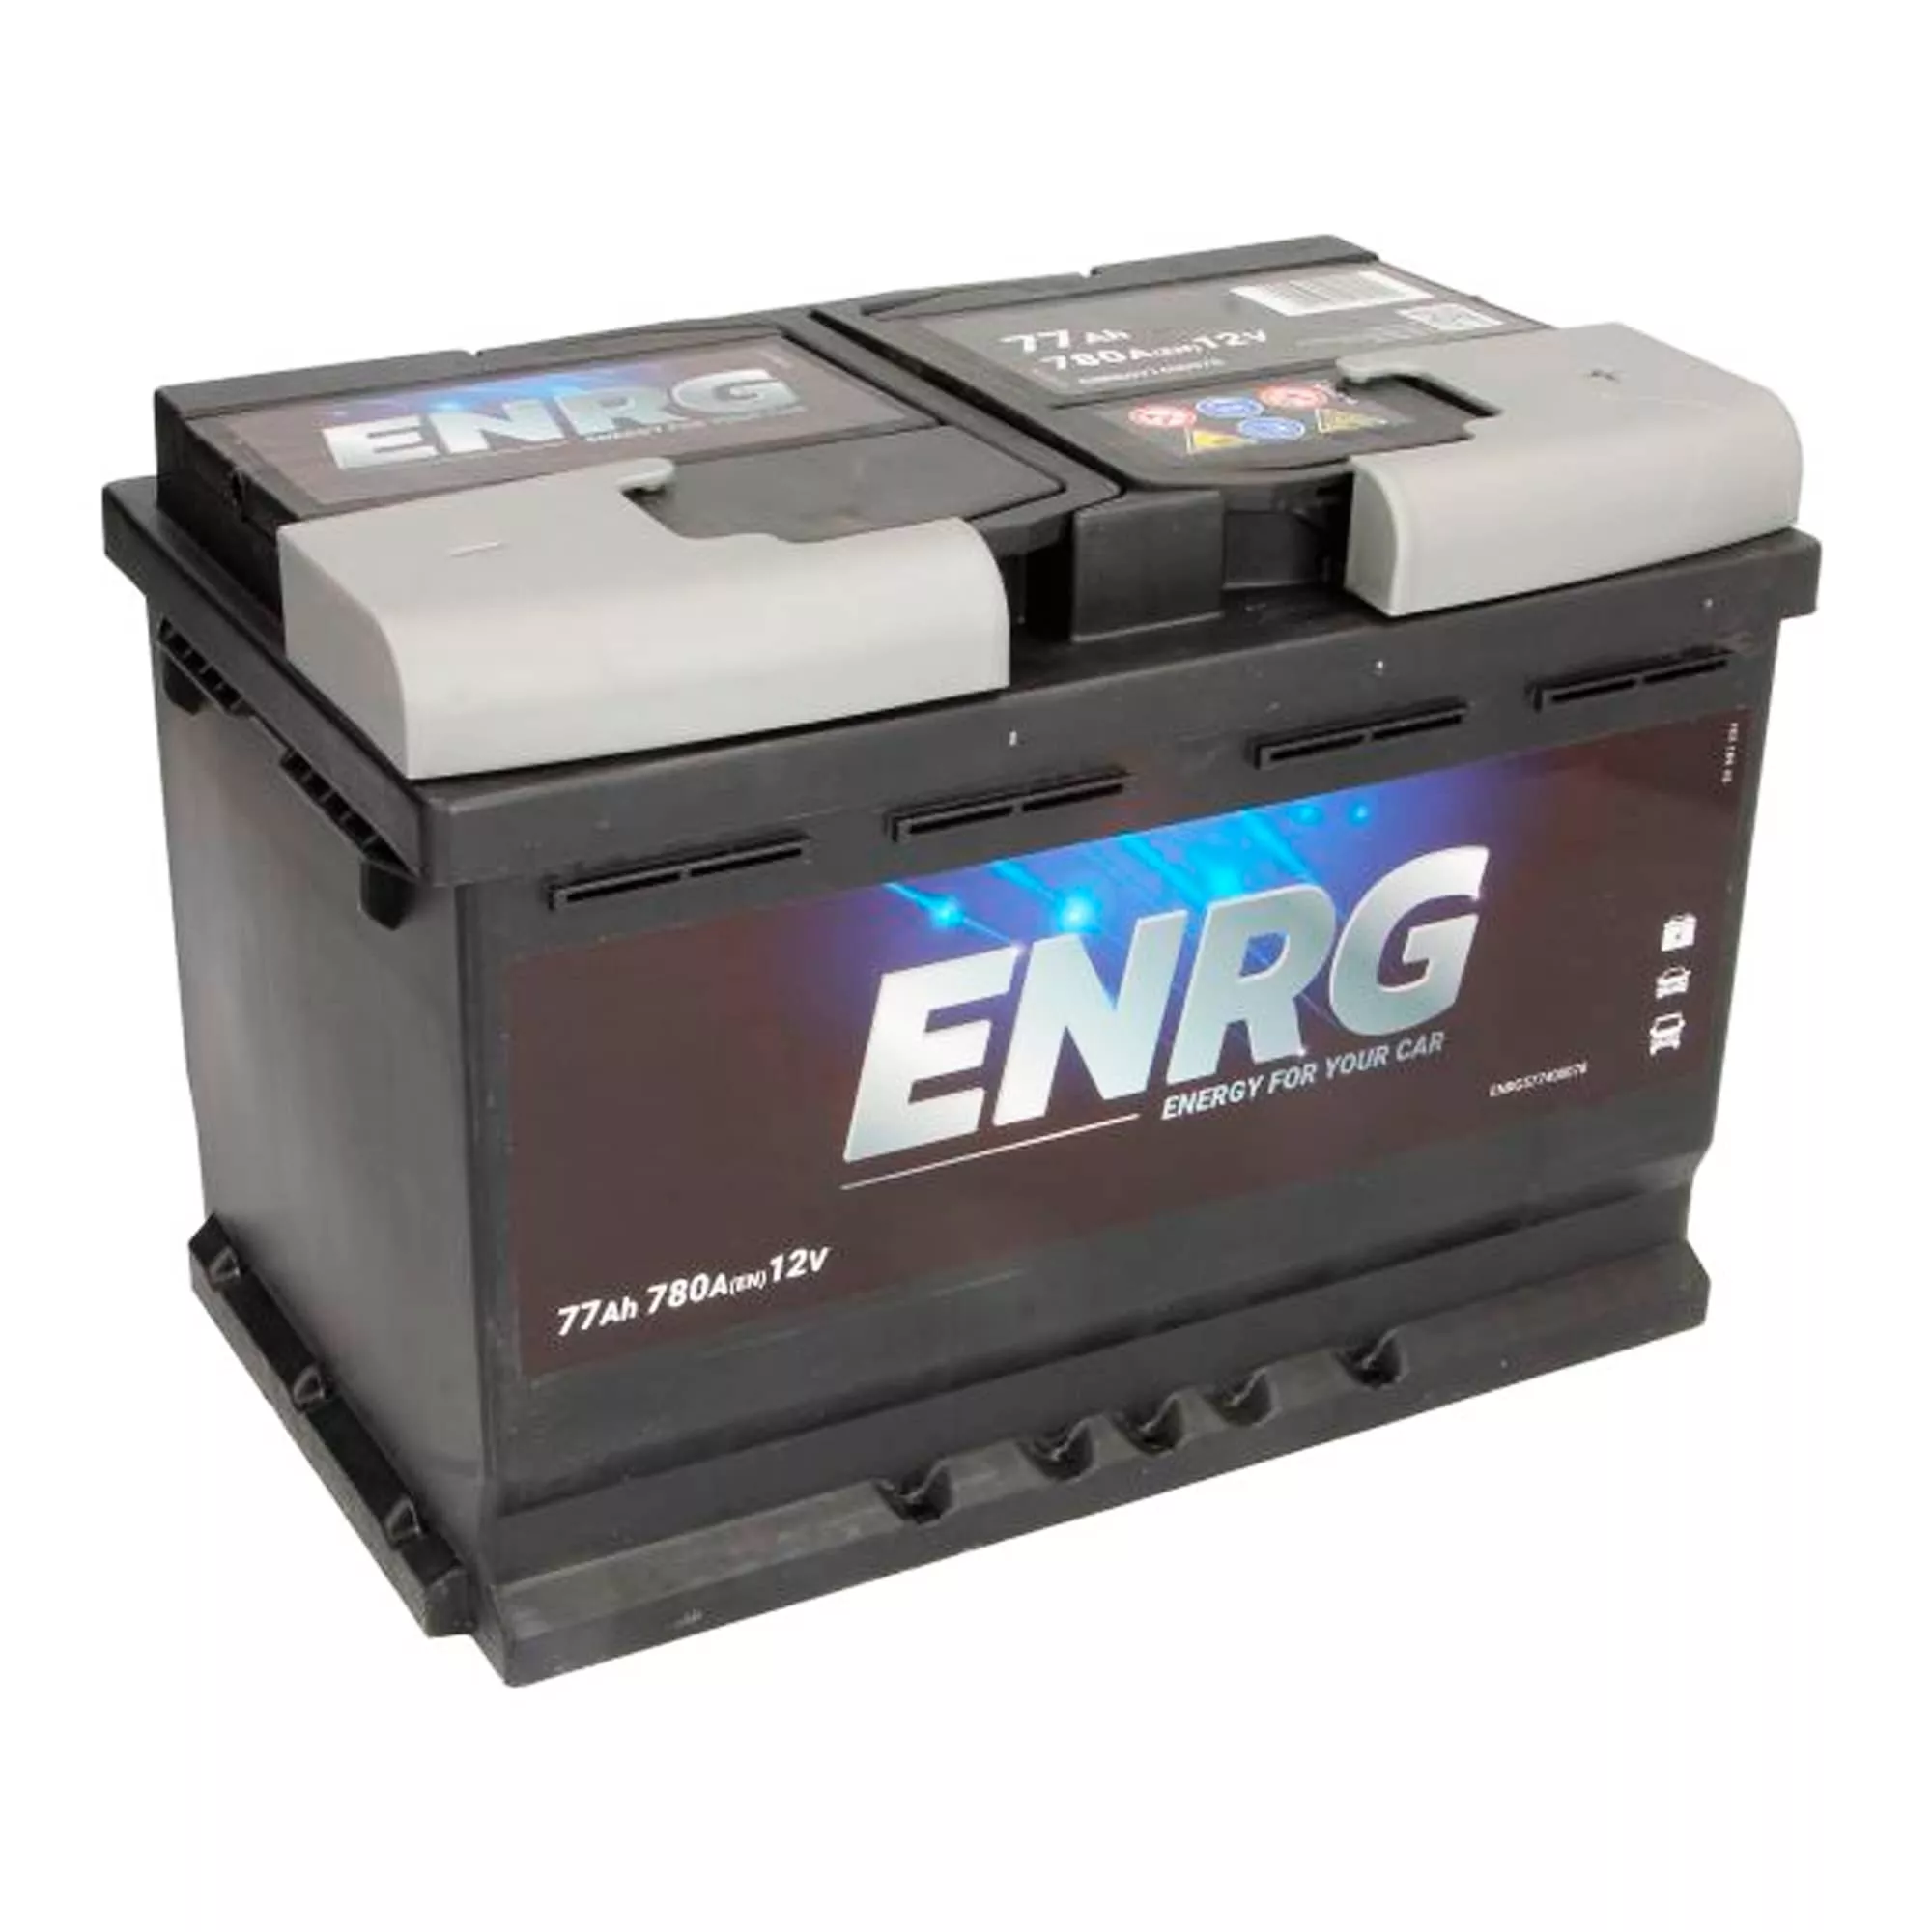 Автомобильный аккумулятор ENRG 12В 77AH АзЕ 780А BUDGET (ENRG577400078)